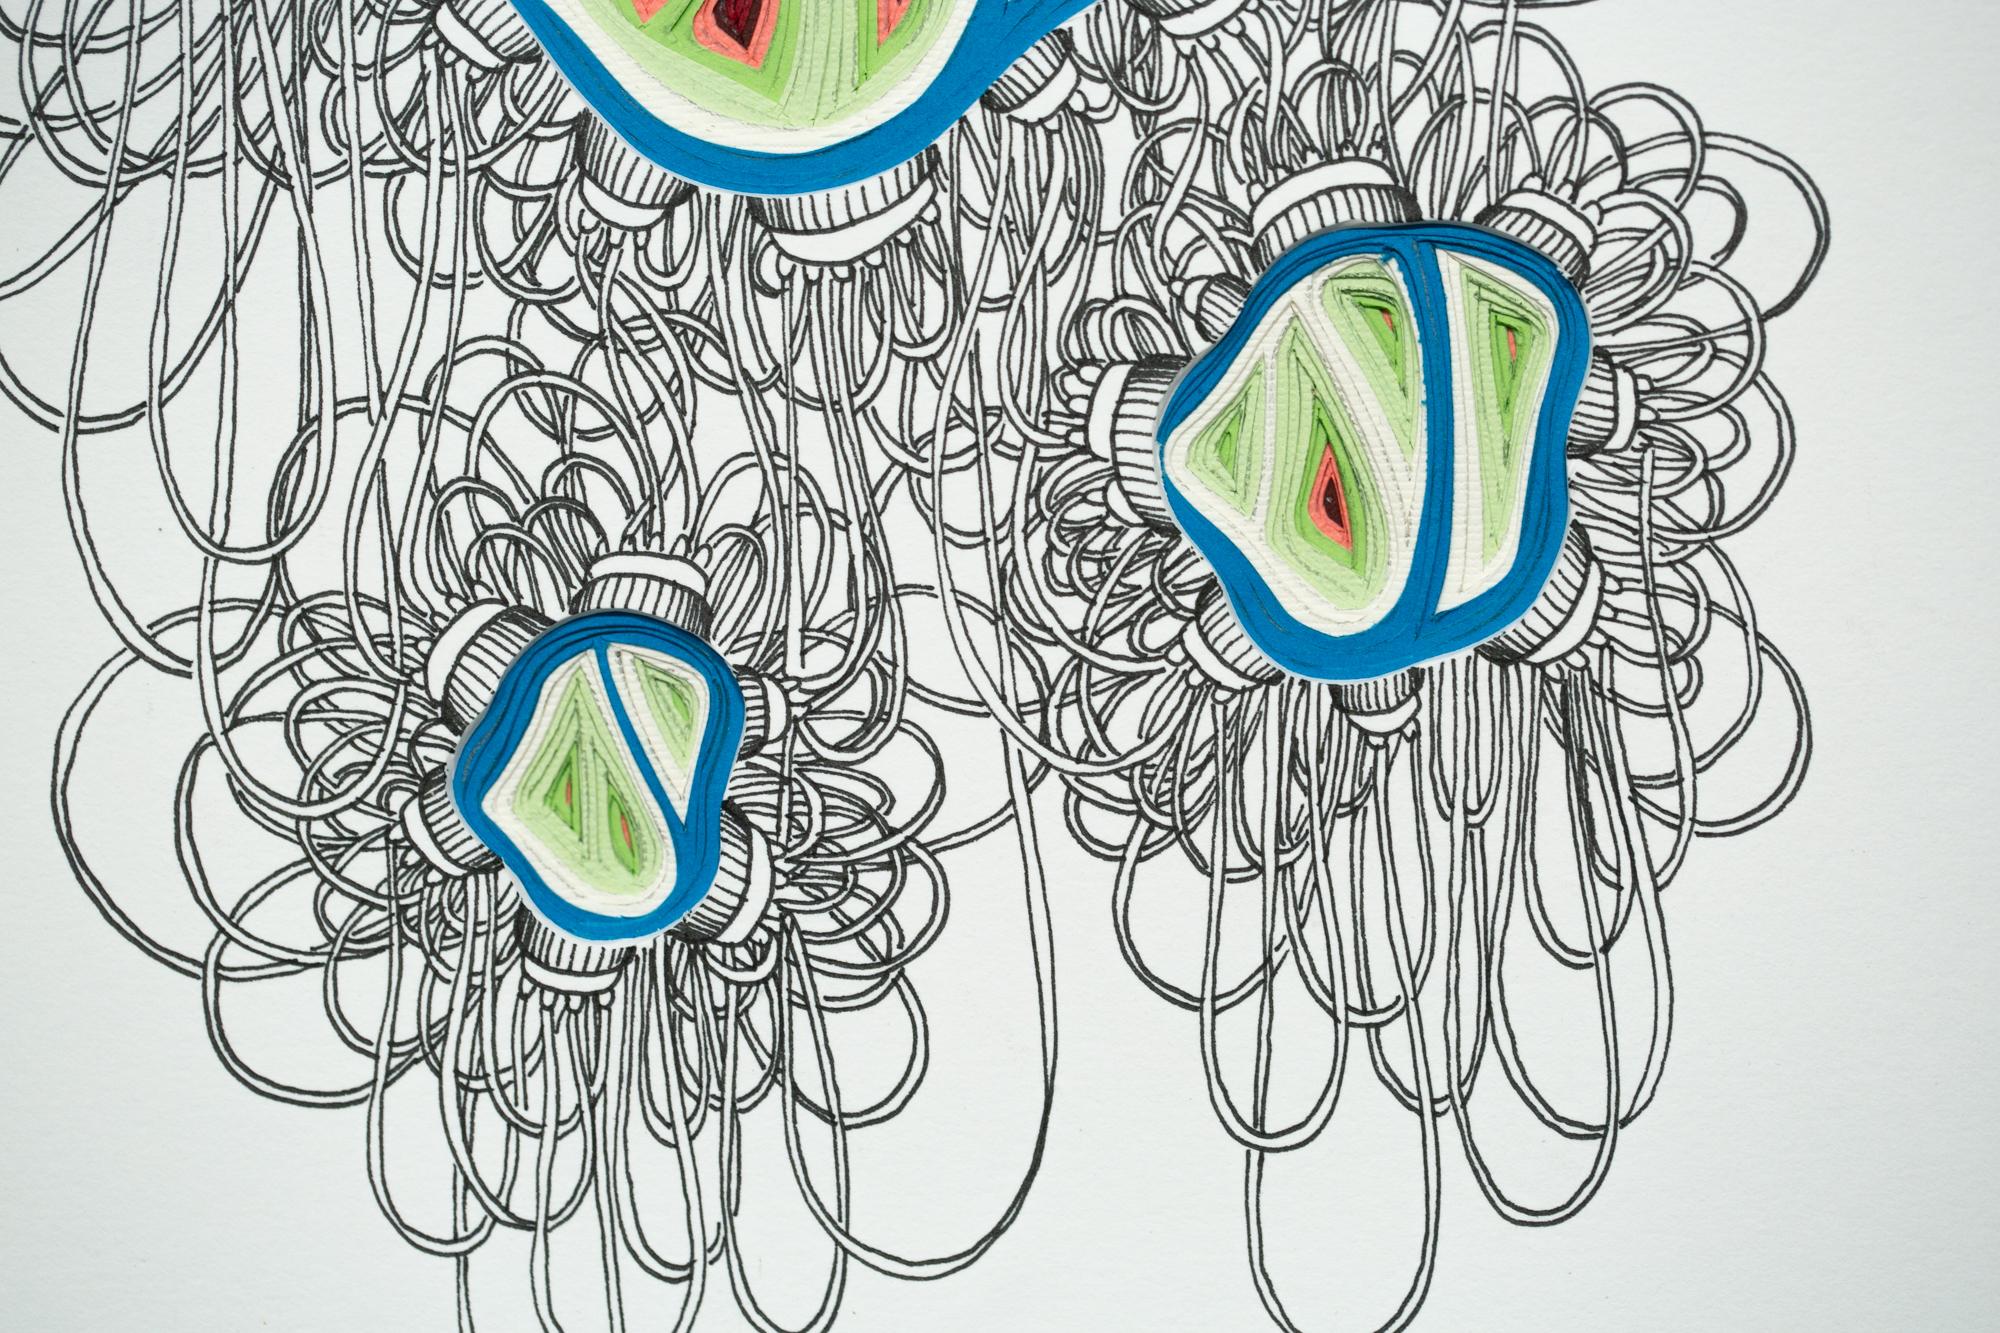 Phlebotomy-Bewegung #16 mit doppelter Schöpfkelle (Grau), Abstract Drawing, von Charles Clary